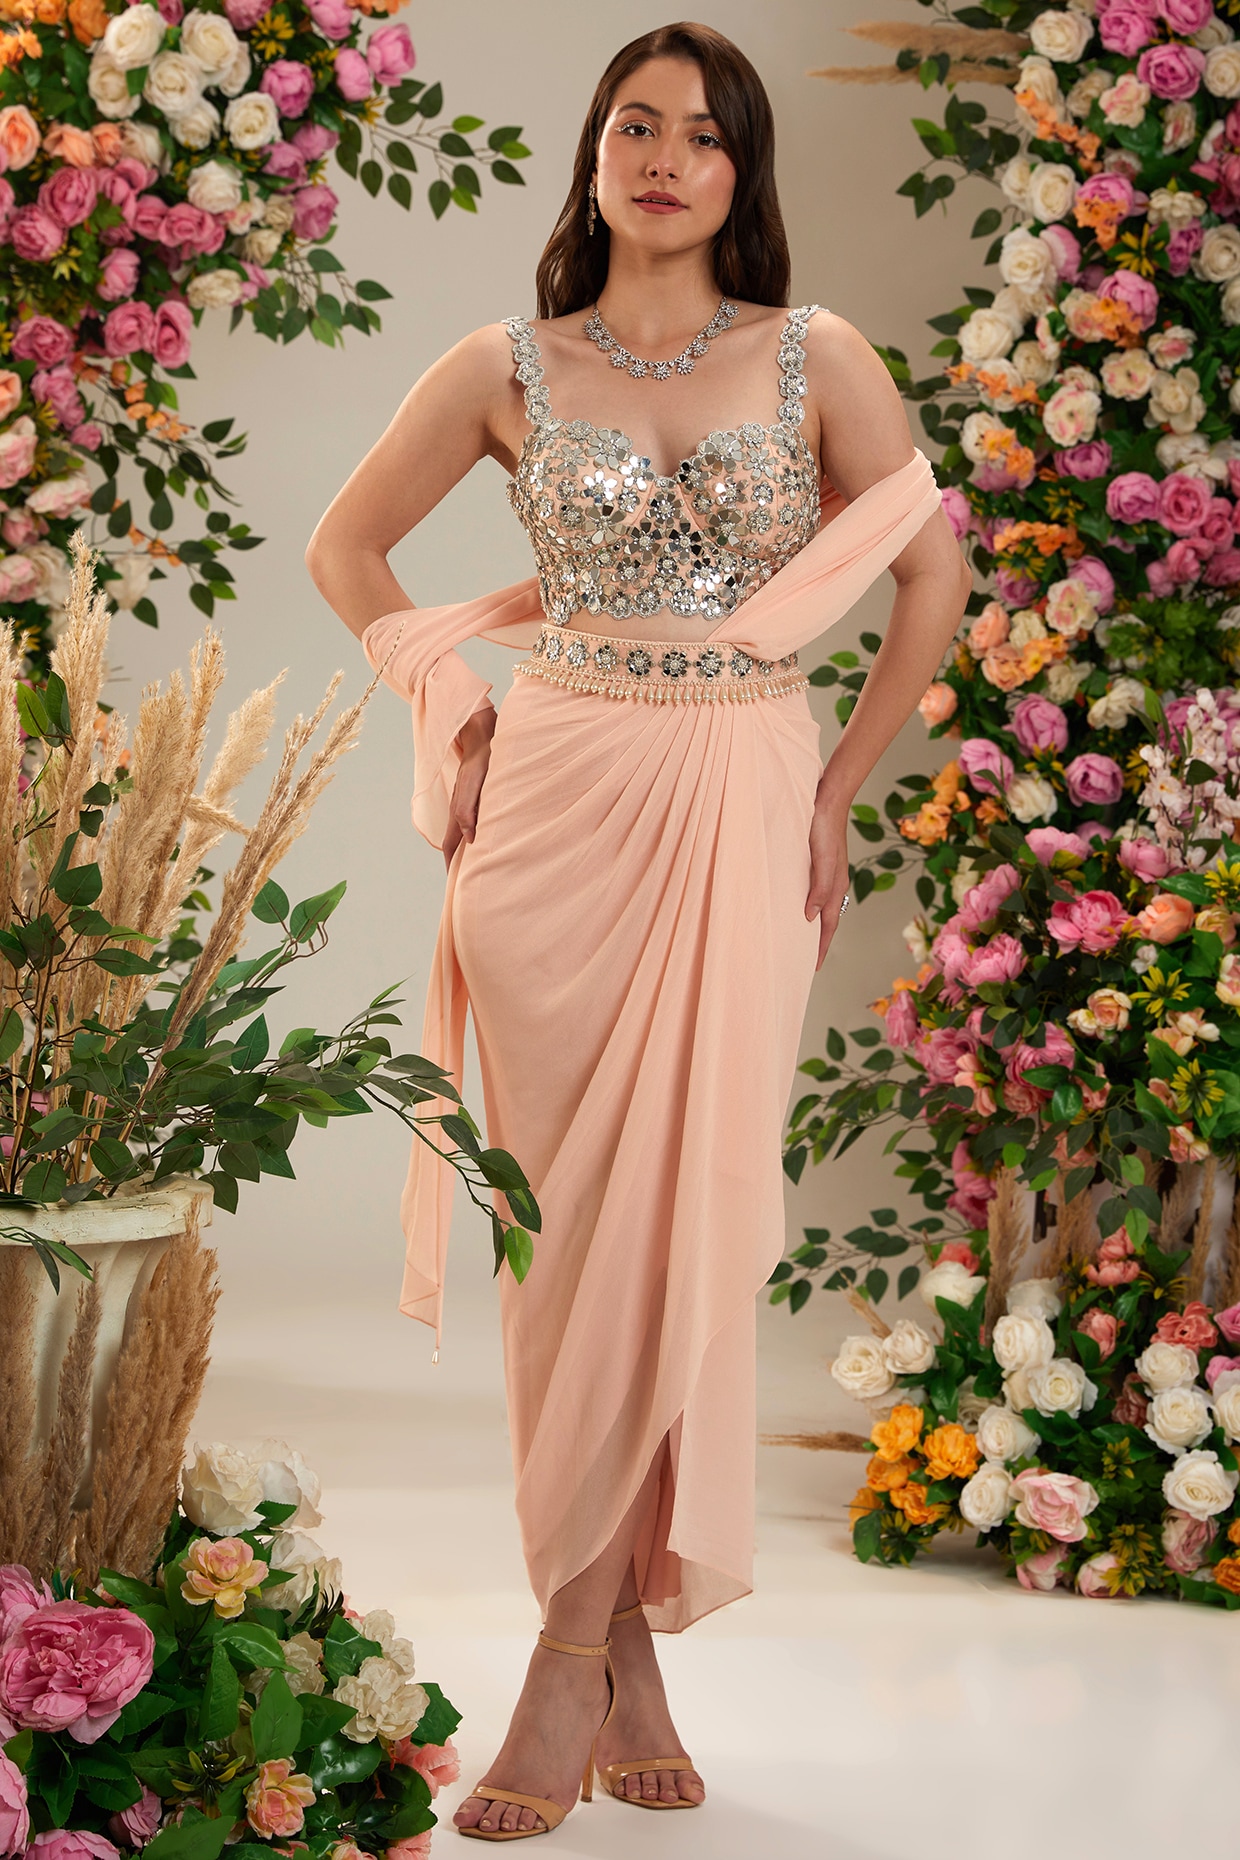 Saree Gown Online Pink Colour Saree - Designer Sarees Rs 500 to 1000 -  SareesWala.com